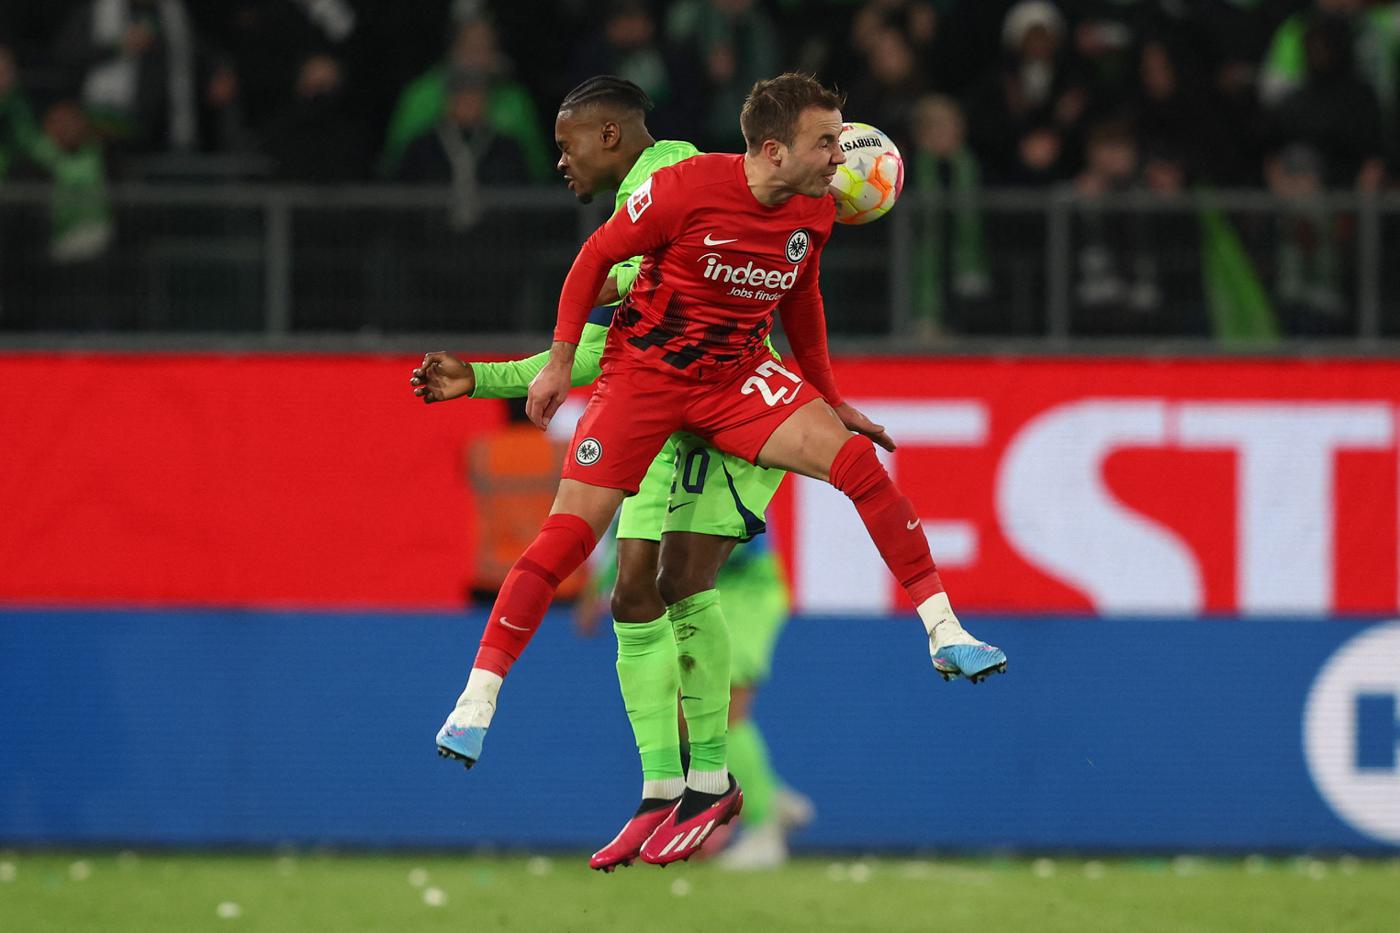 Wolfsburg - Eintracht - 2:2. German Championship, round 23. Match review, statistics.